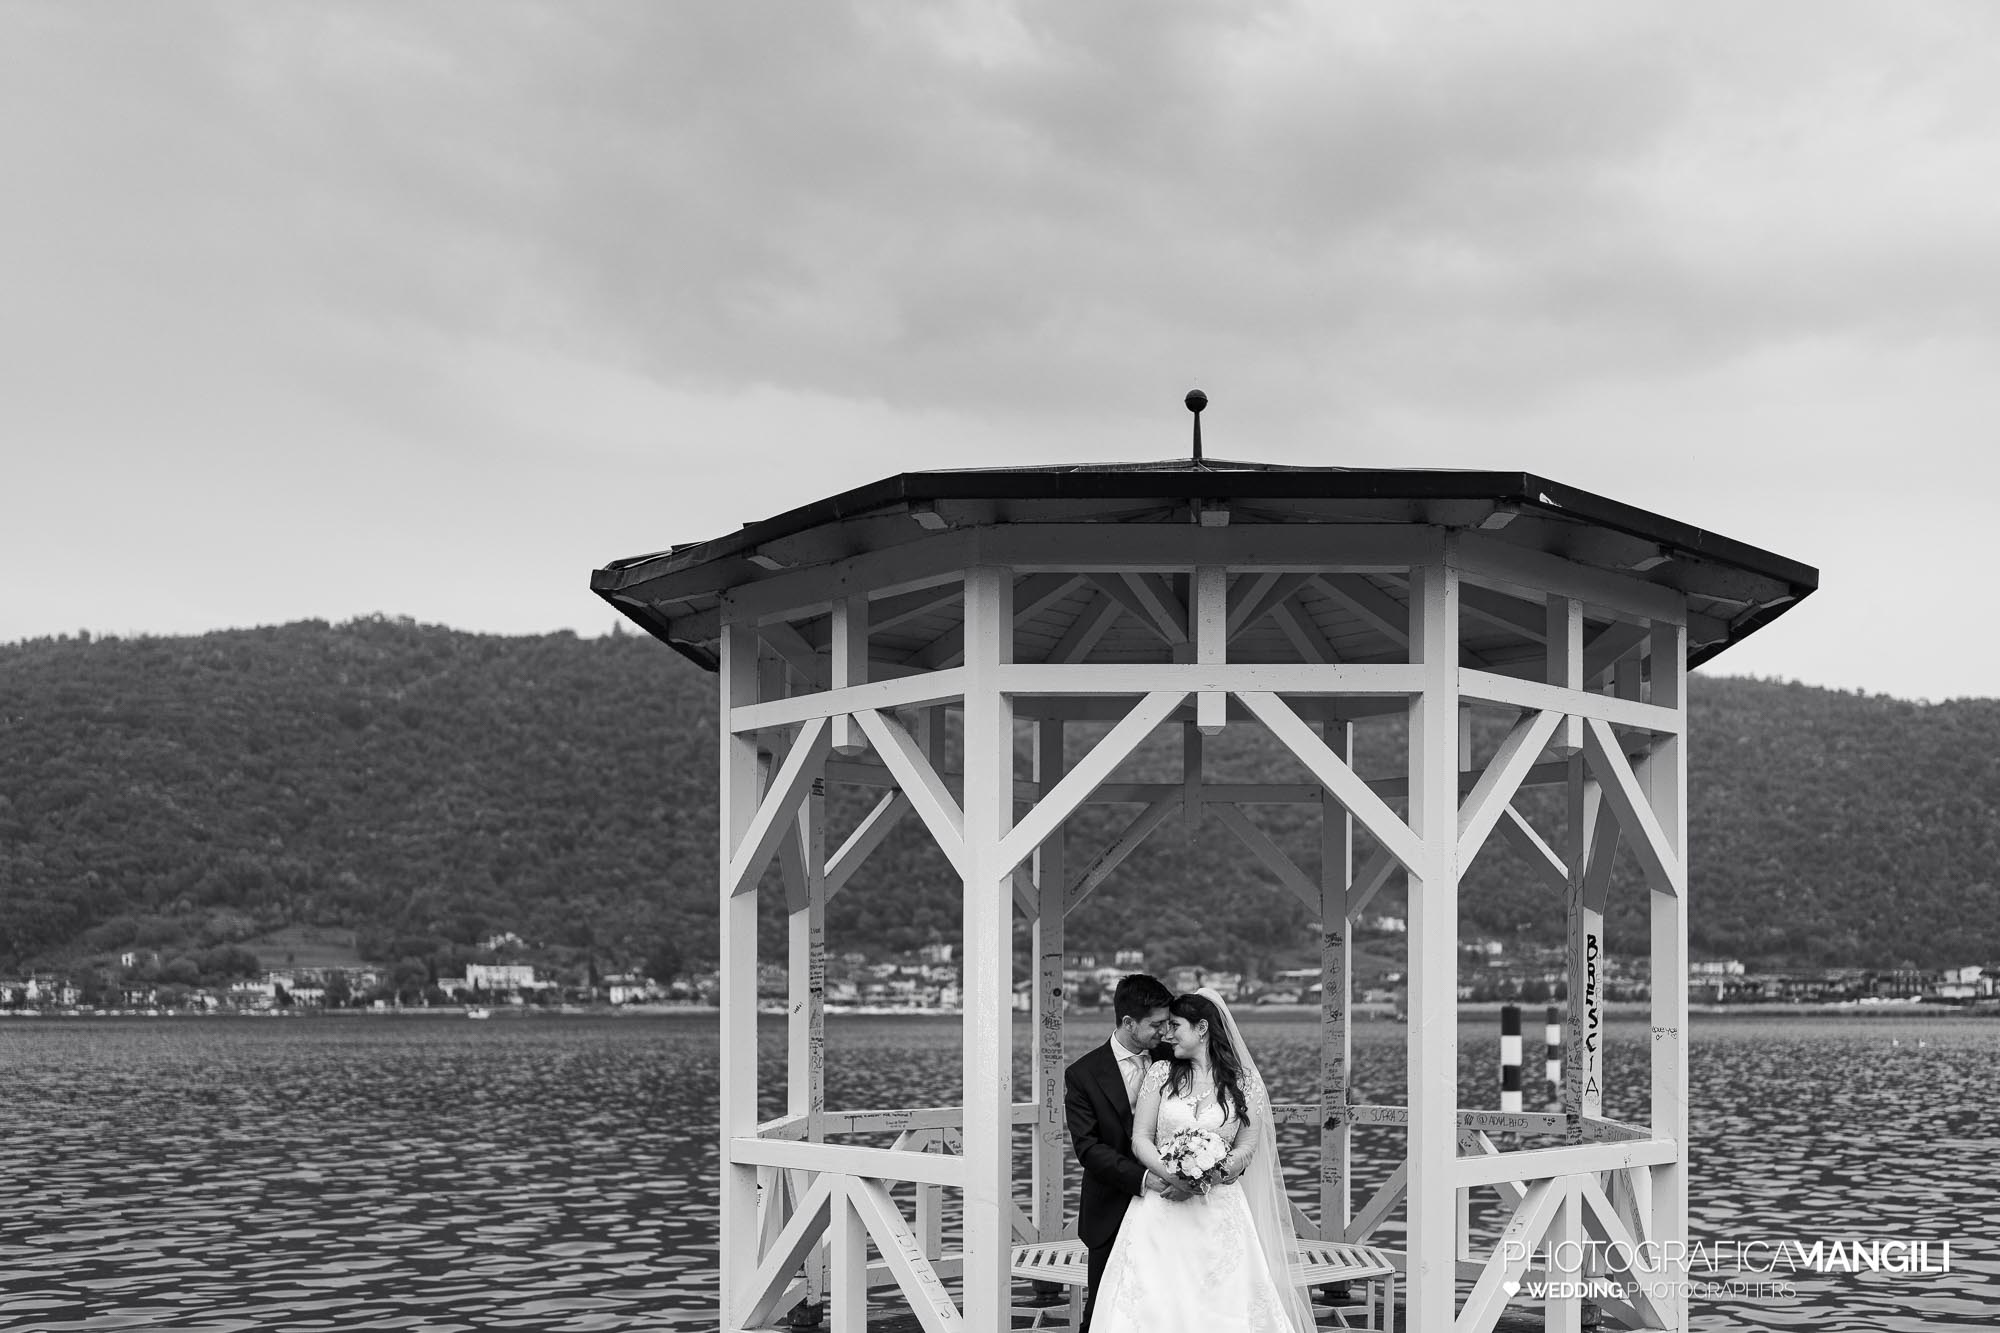 048 servizio fotografico wedding reportage ritratto sposi bianco nero lungolago Sarnico lago Iseo Bergamo chiara oliviero